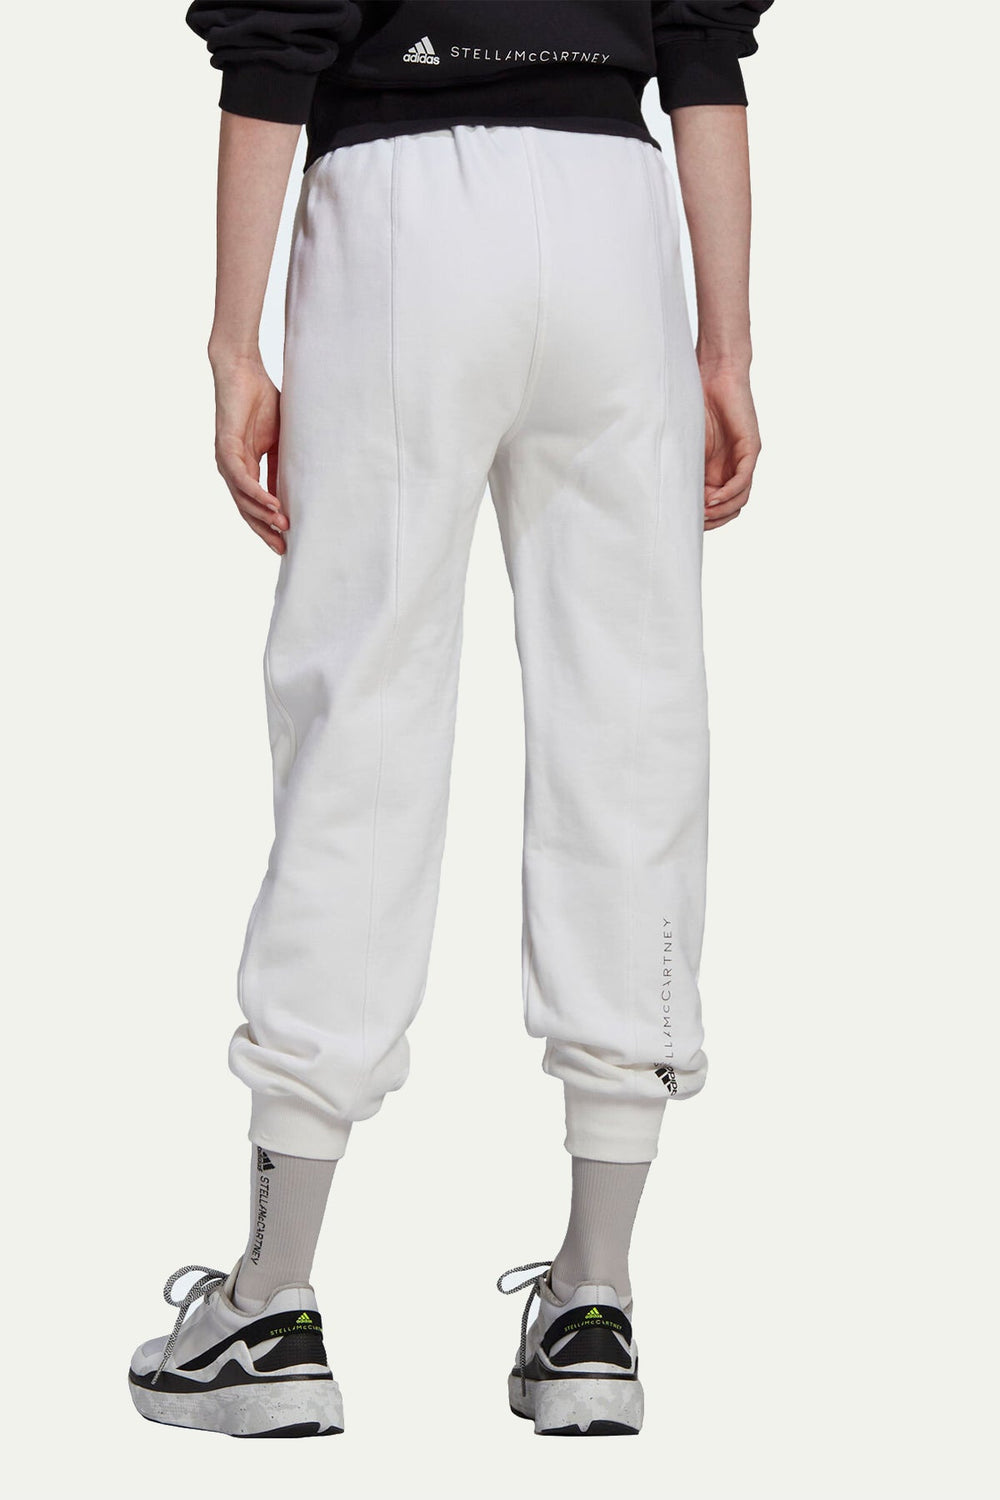 מכנסי טרנינג בצבע לבן - Adidas Stella